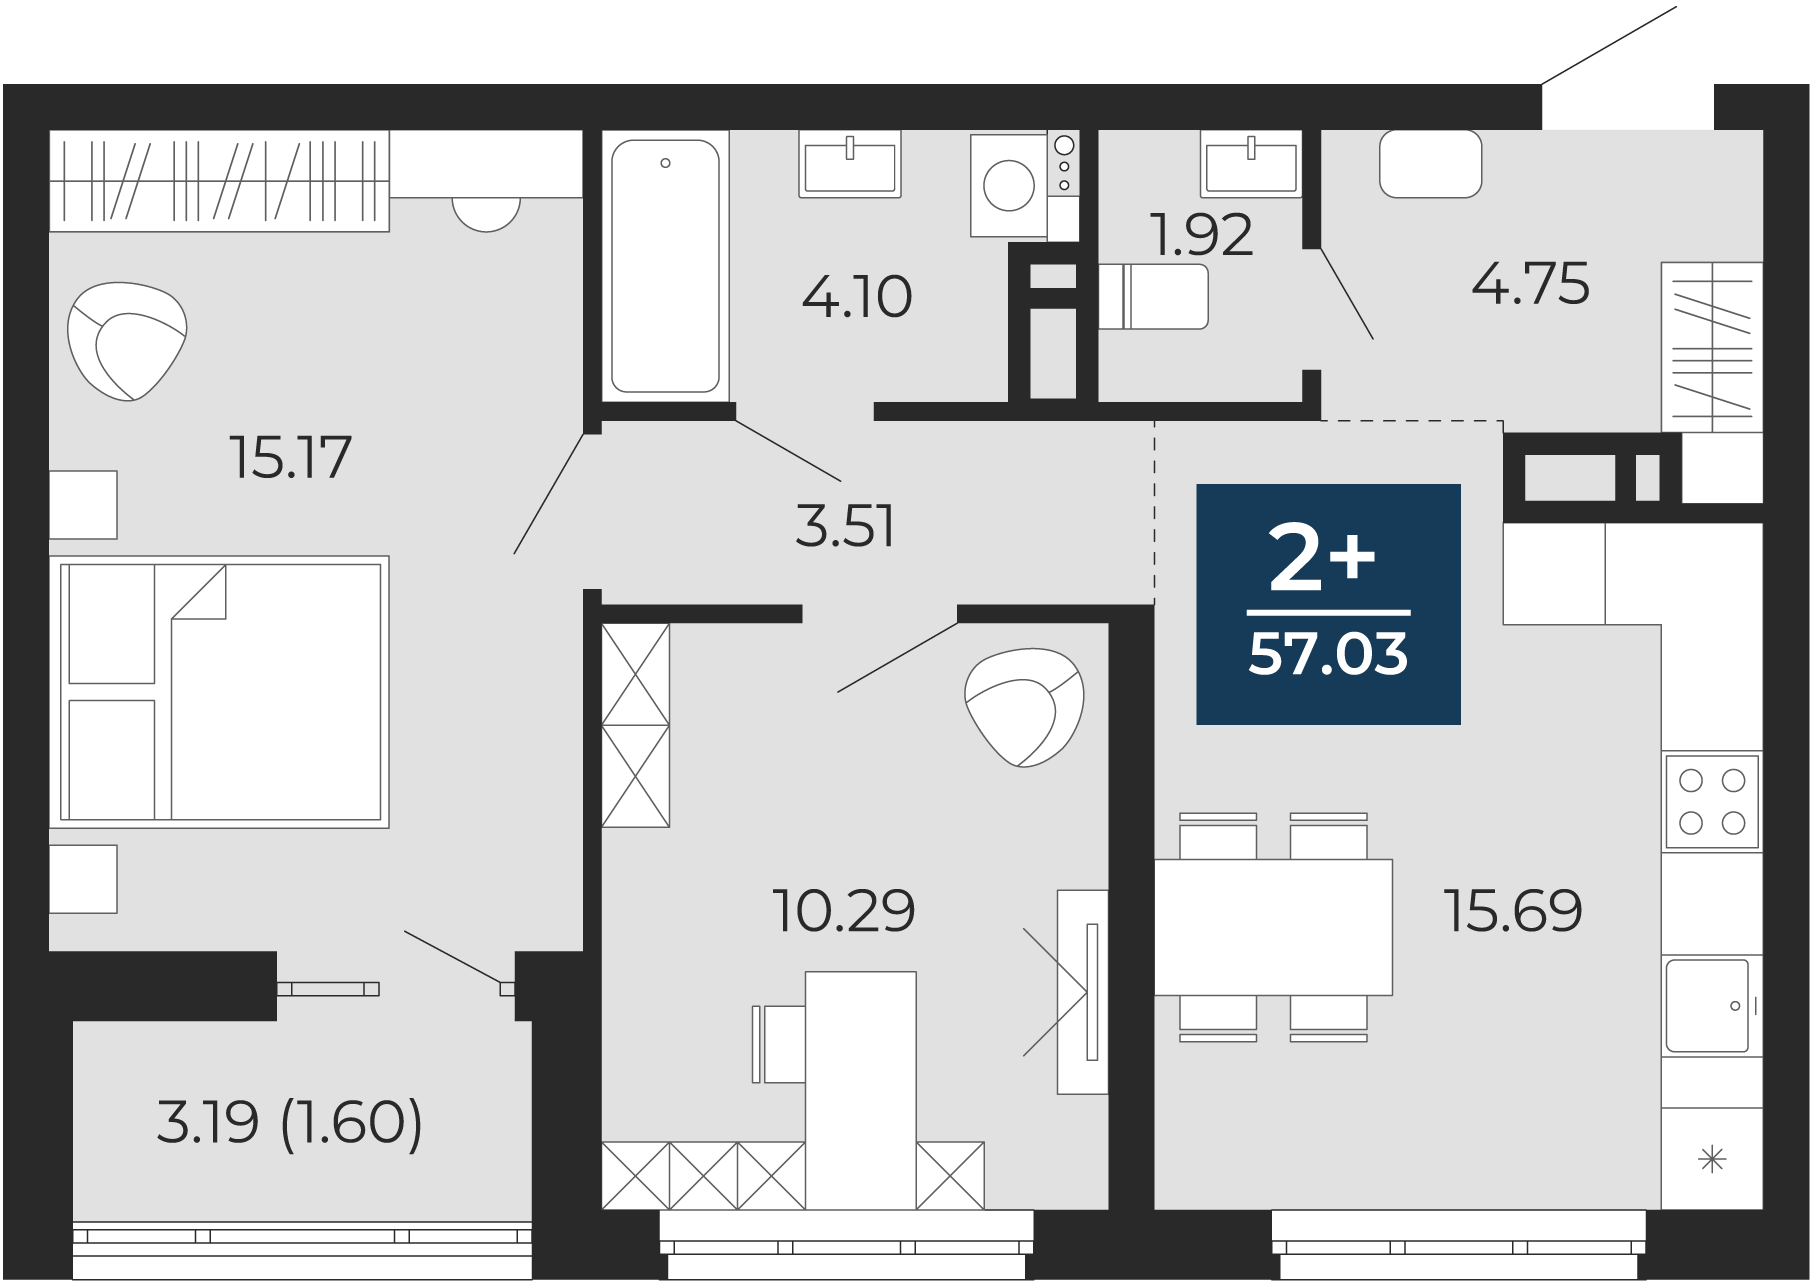 Квартира № 377, 2-комнатная, 57.03 кв. м, 6 этаж